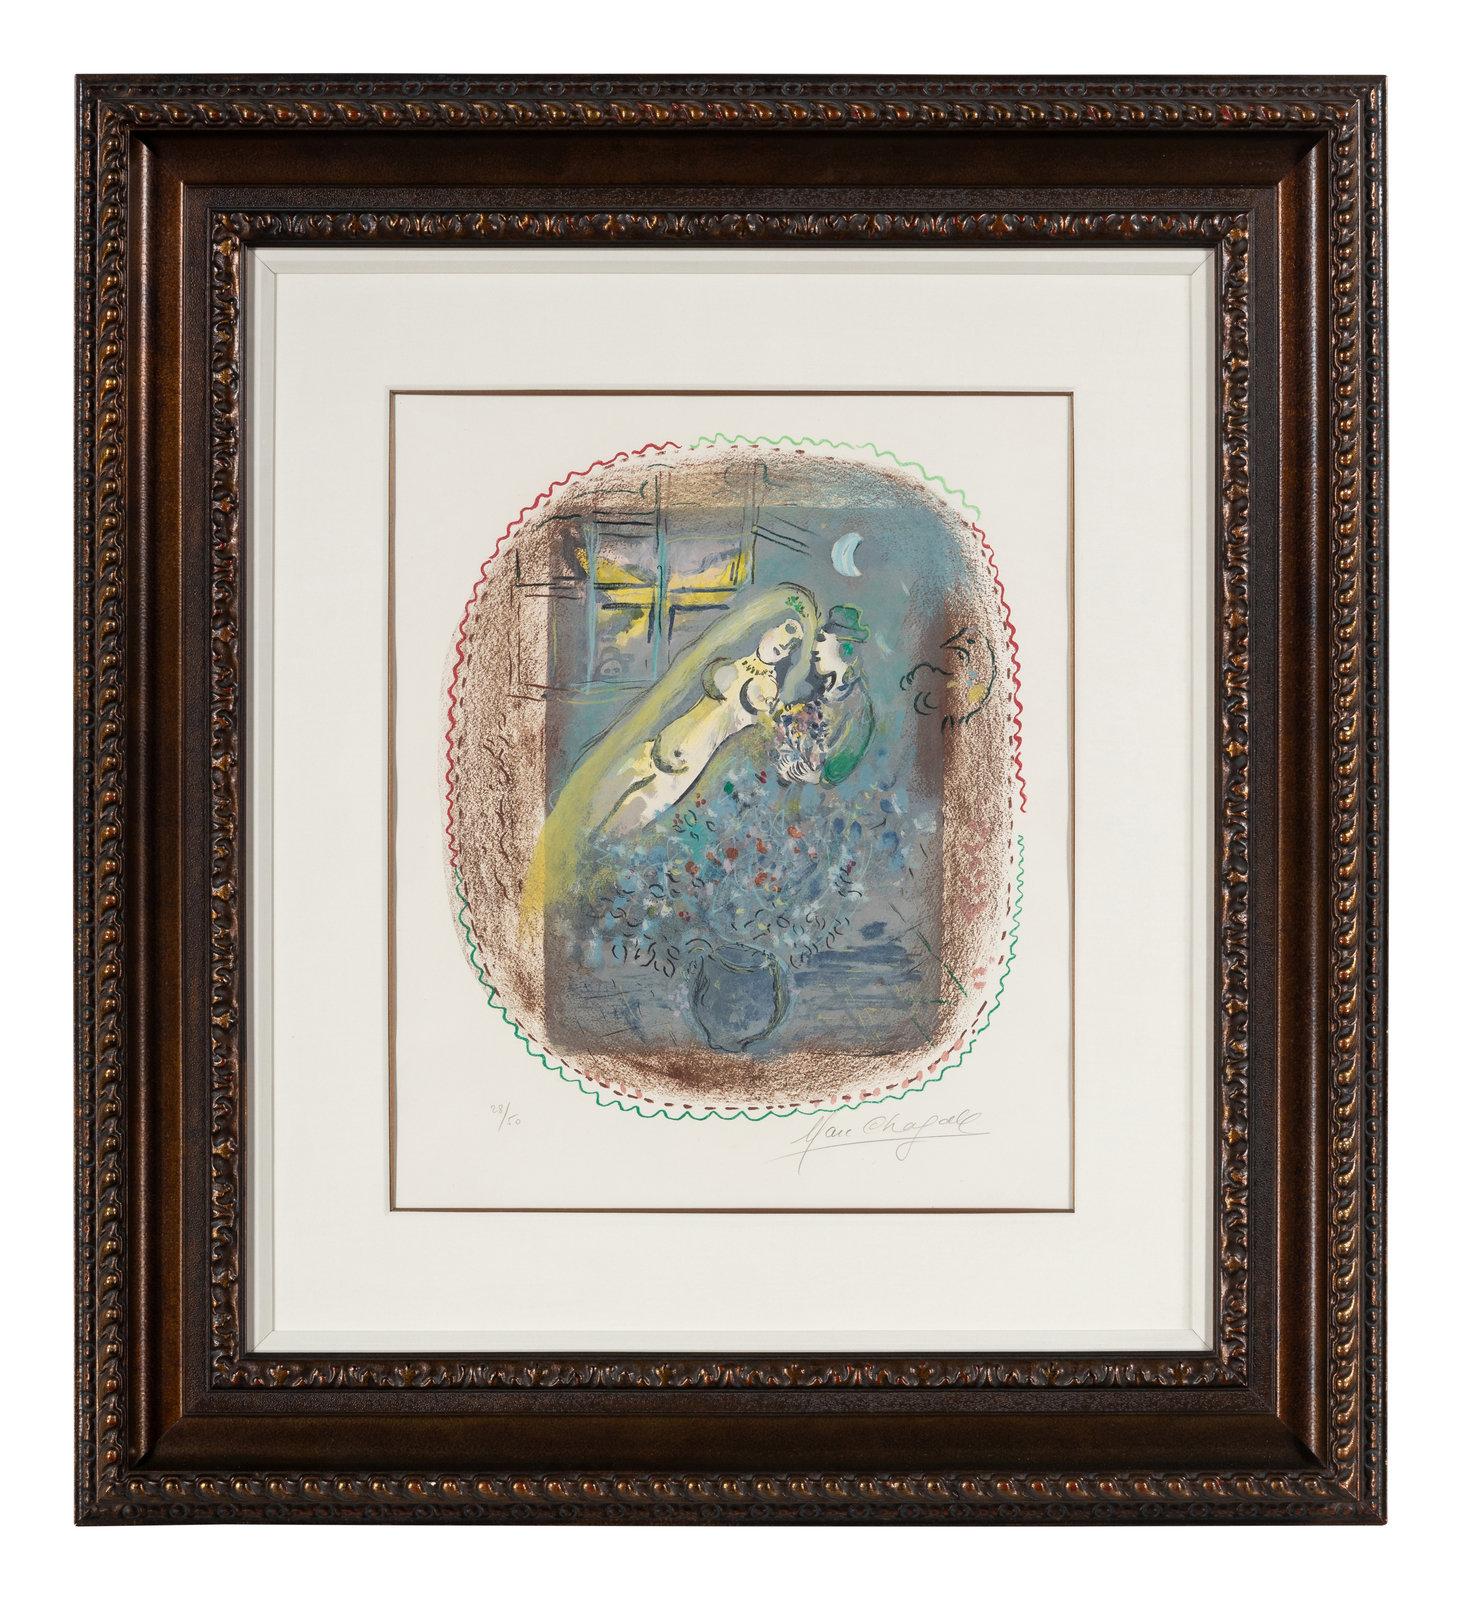 Marc Chagall  (français/russe, 1887-1985)

"Dédicace 

1968
Lithographie couleur

signé et numéroté 28/50 au crayon
Image : 17 7/8 x 15 1/4 pouces.
Encadré : 38 x 34 1/4 x 2 1/4 pouces.
Feuille : 24 3/8 x 18 5/8 pouces.
La littérature :
Mourlot